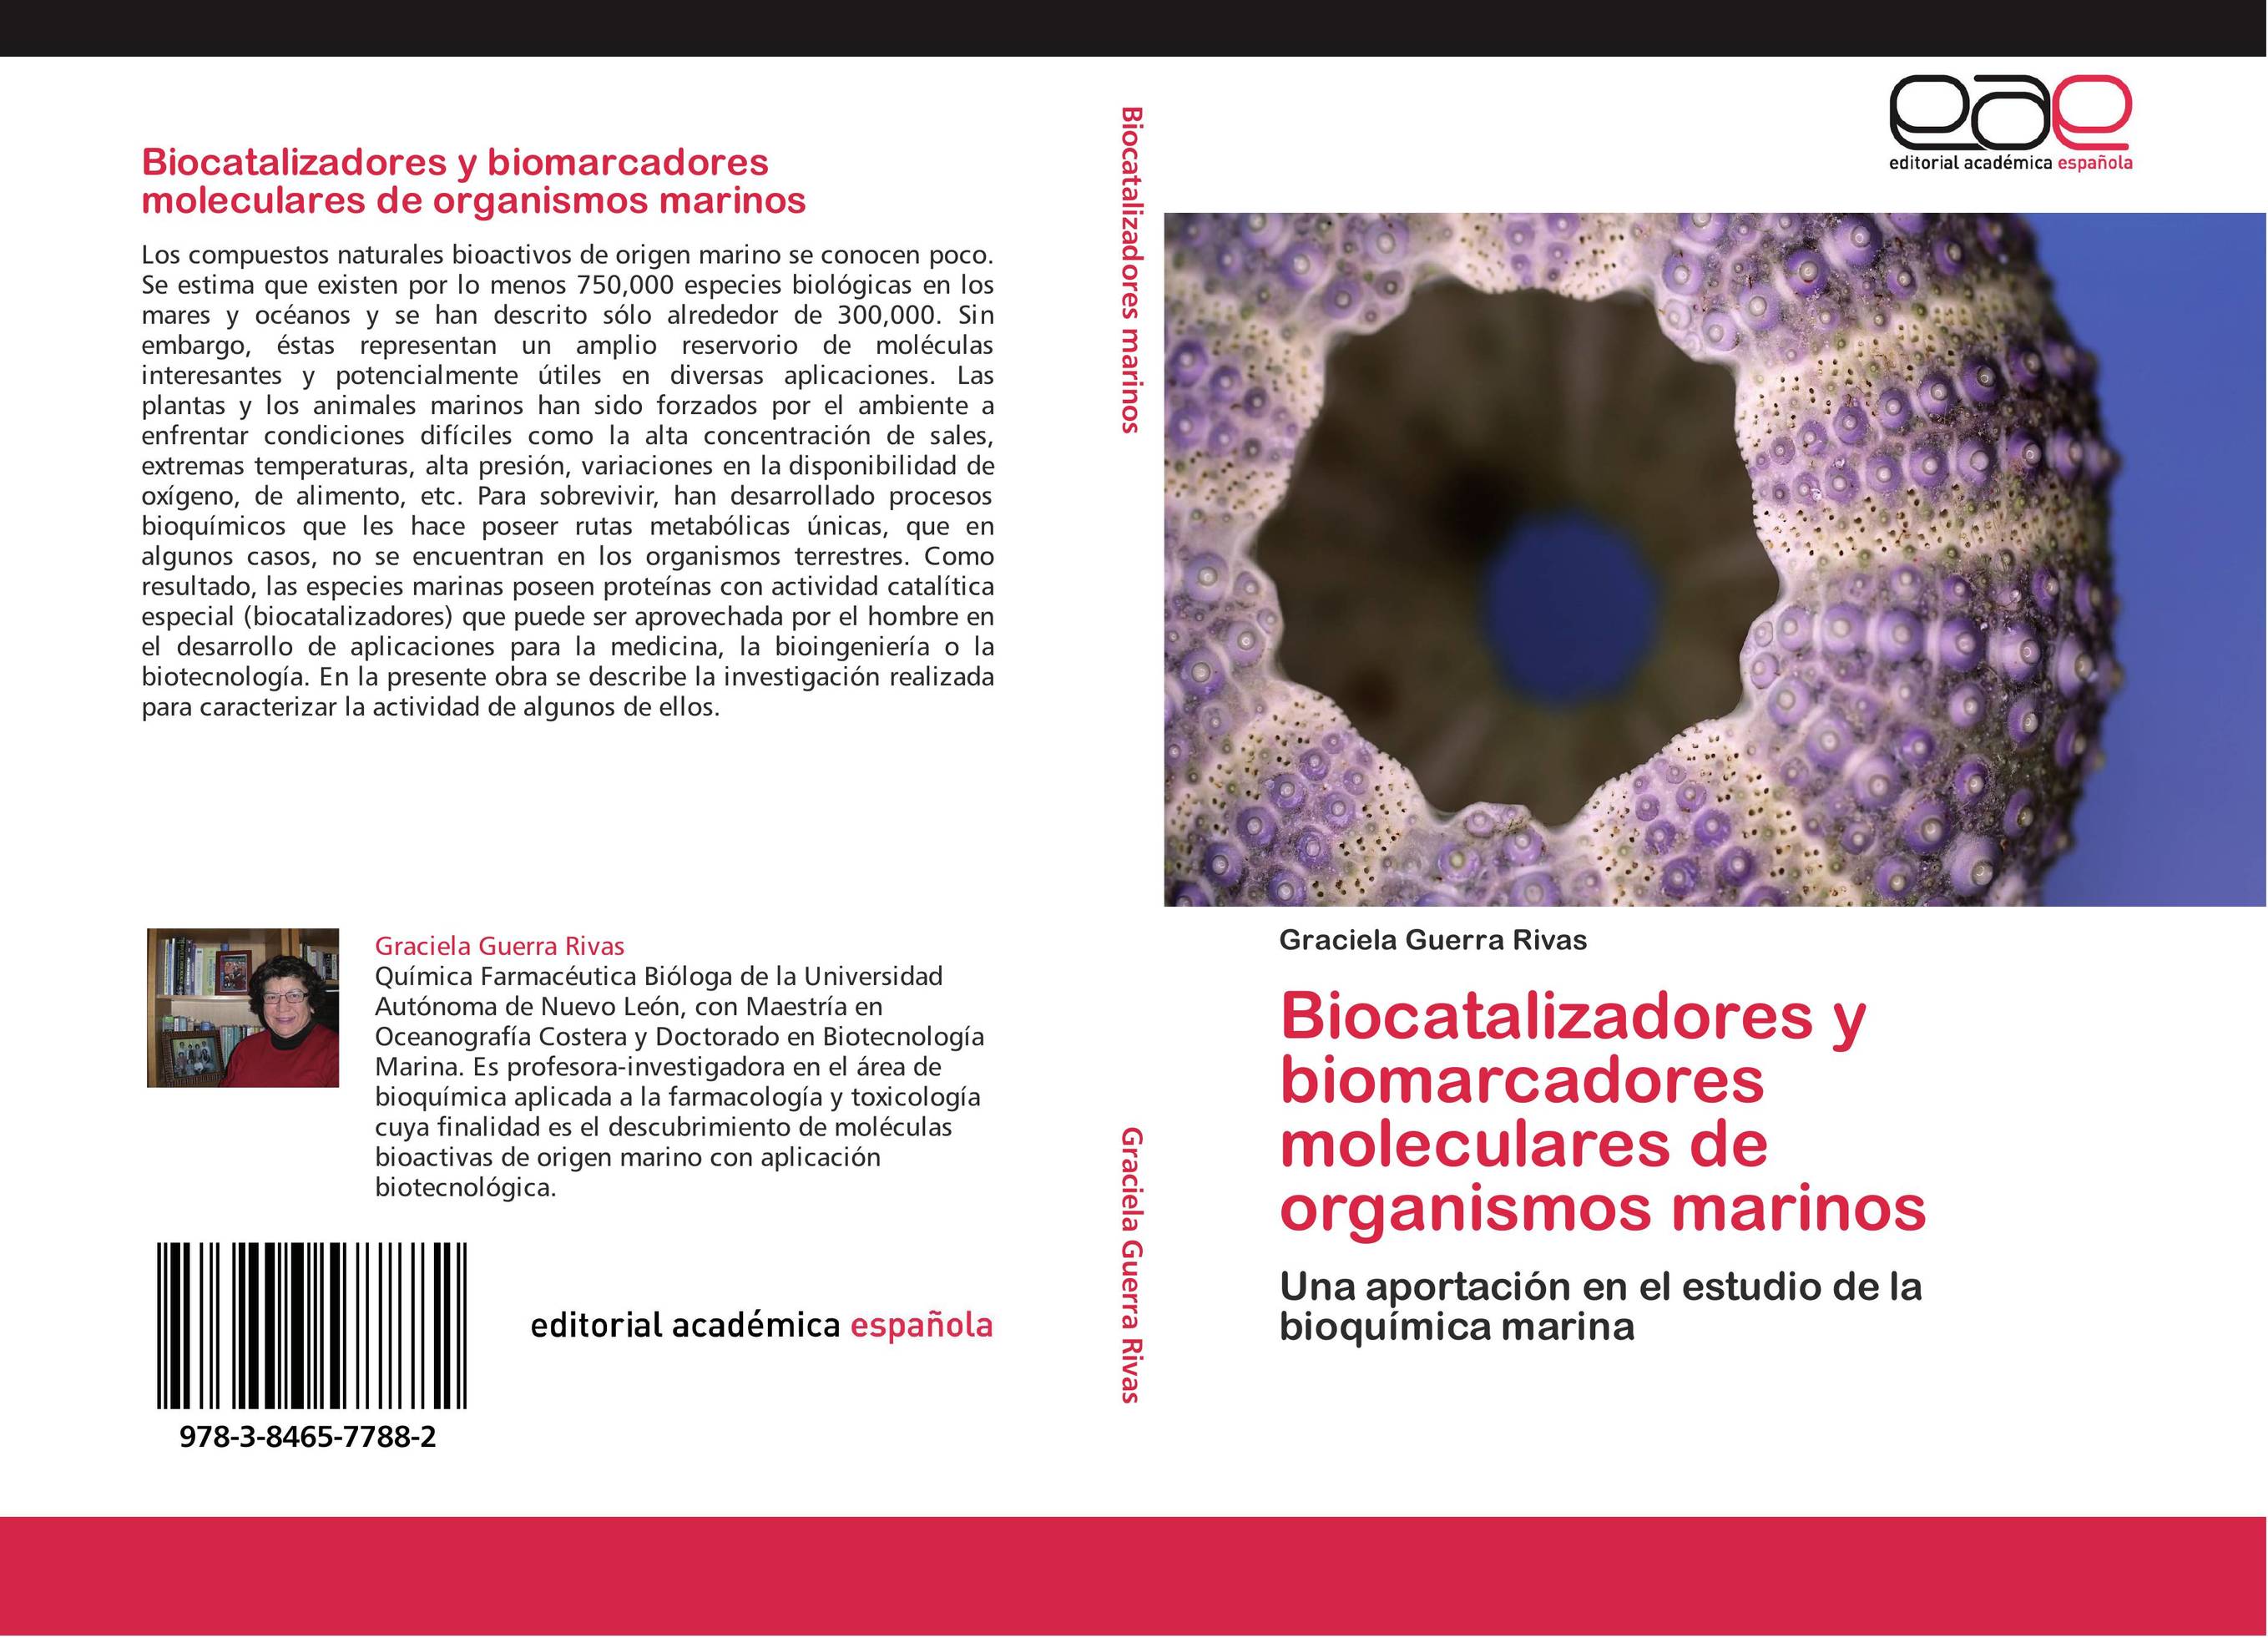 Biocatalizadores y biomarcadores moleculares de organismos marinos